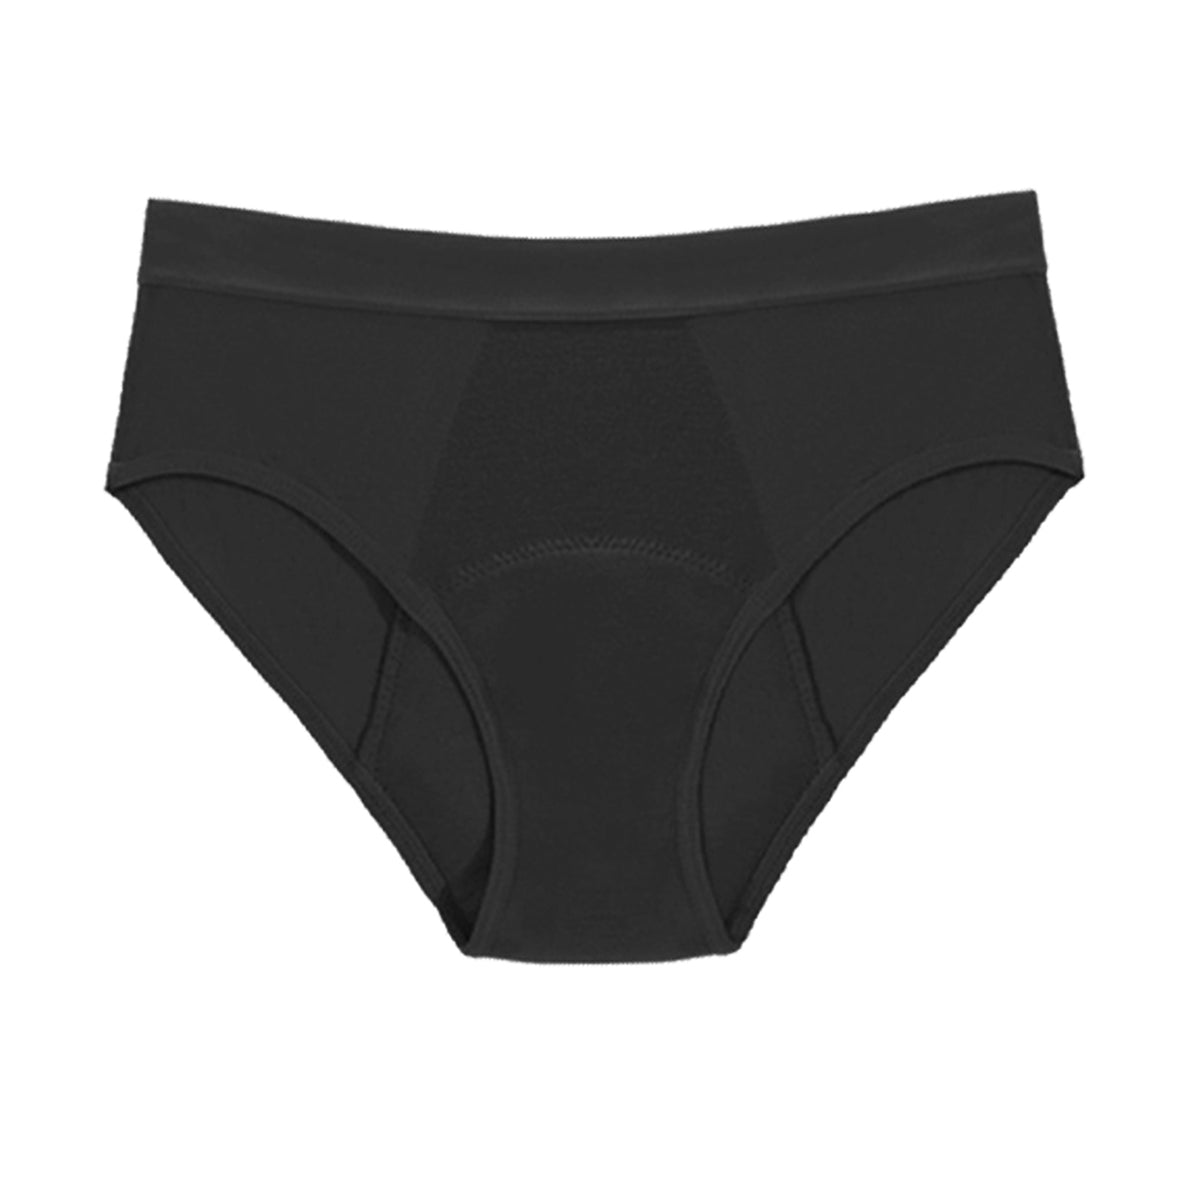 Seamless Period Underwear - Rudie